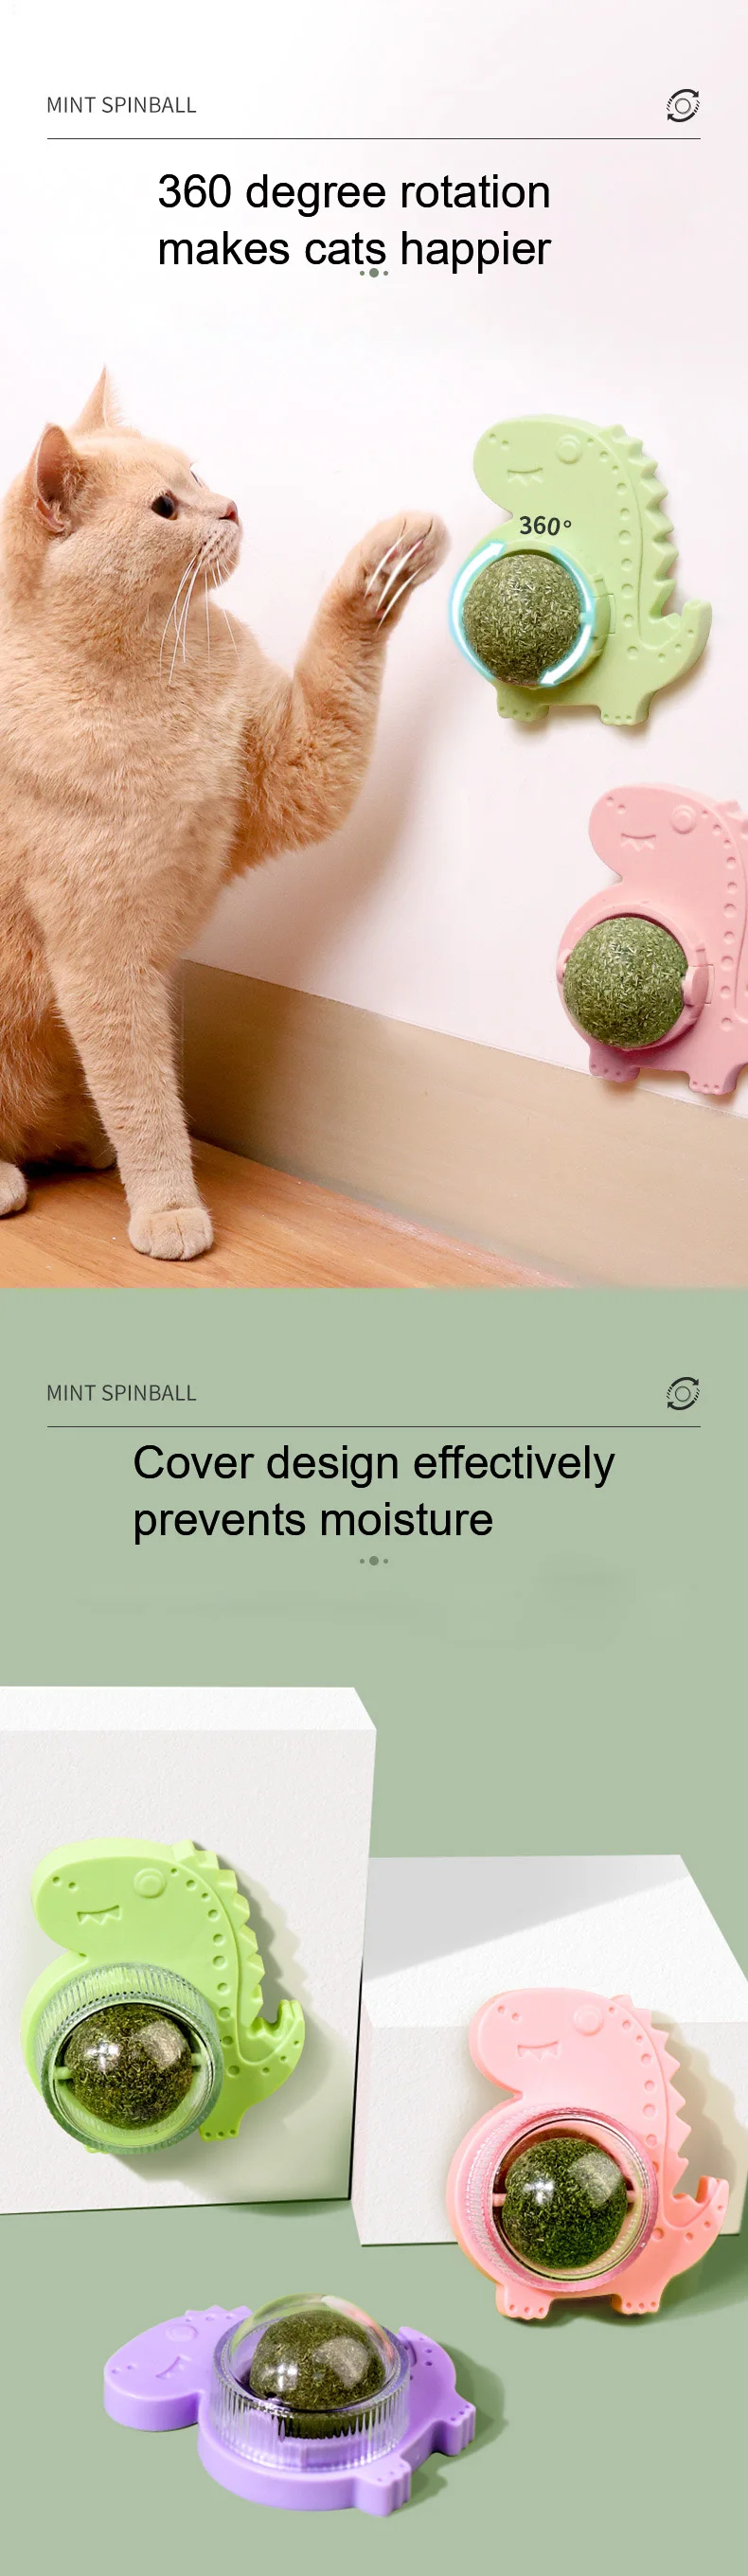 Cat Mint Toy